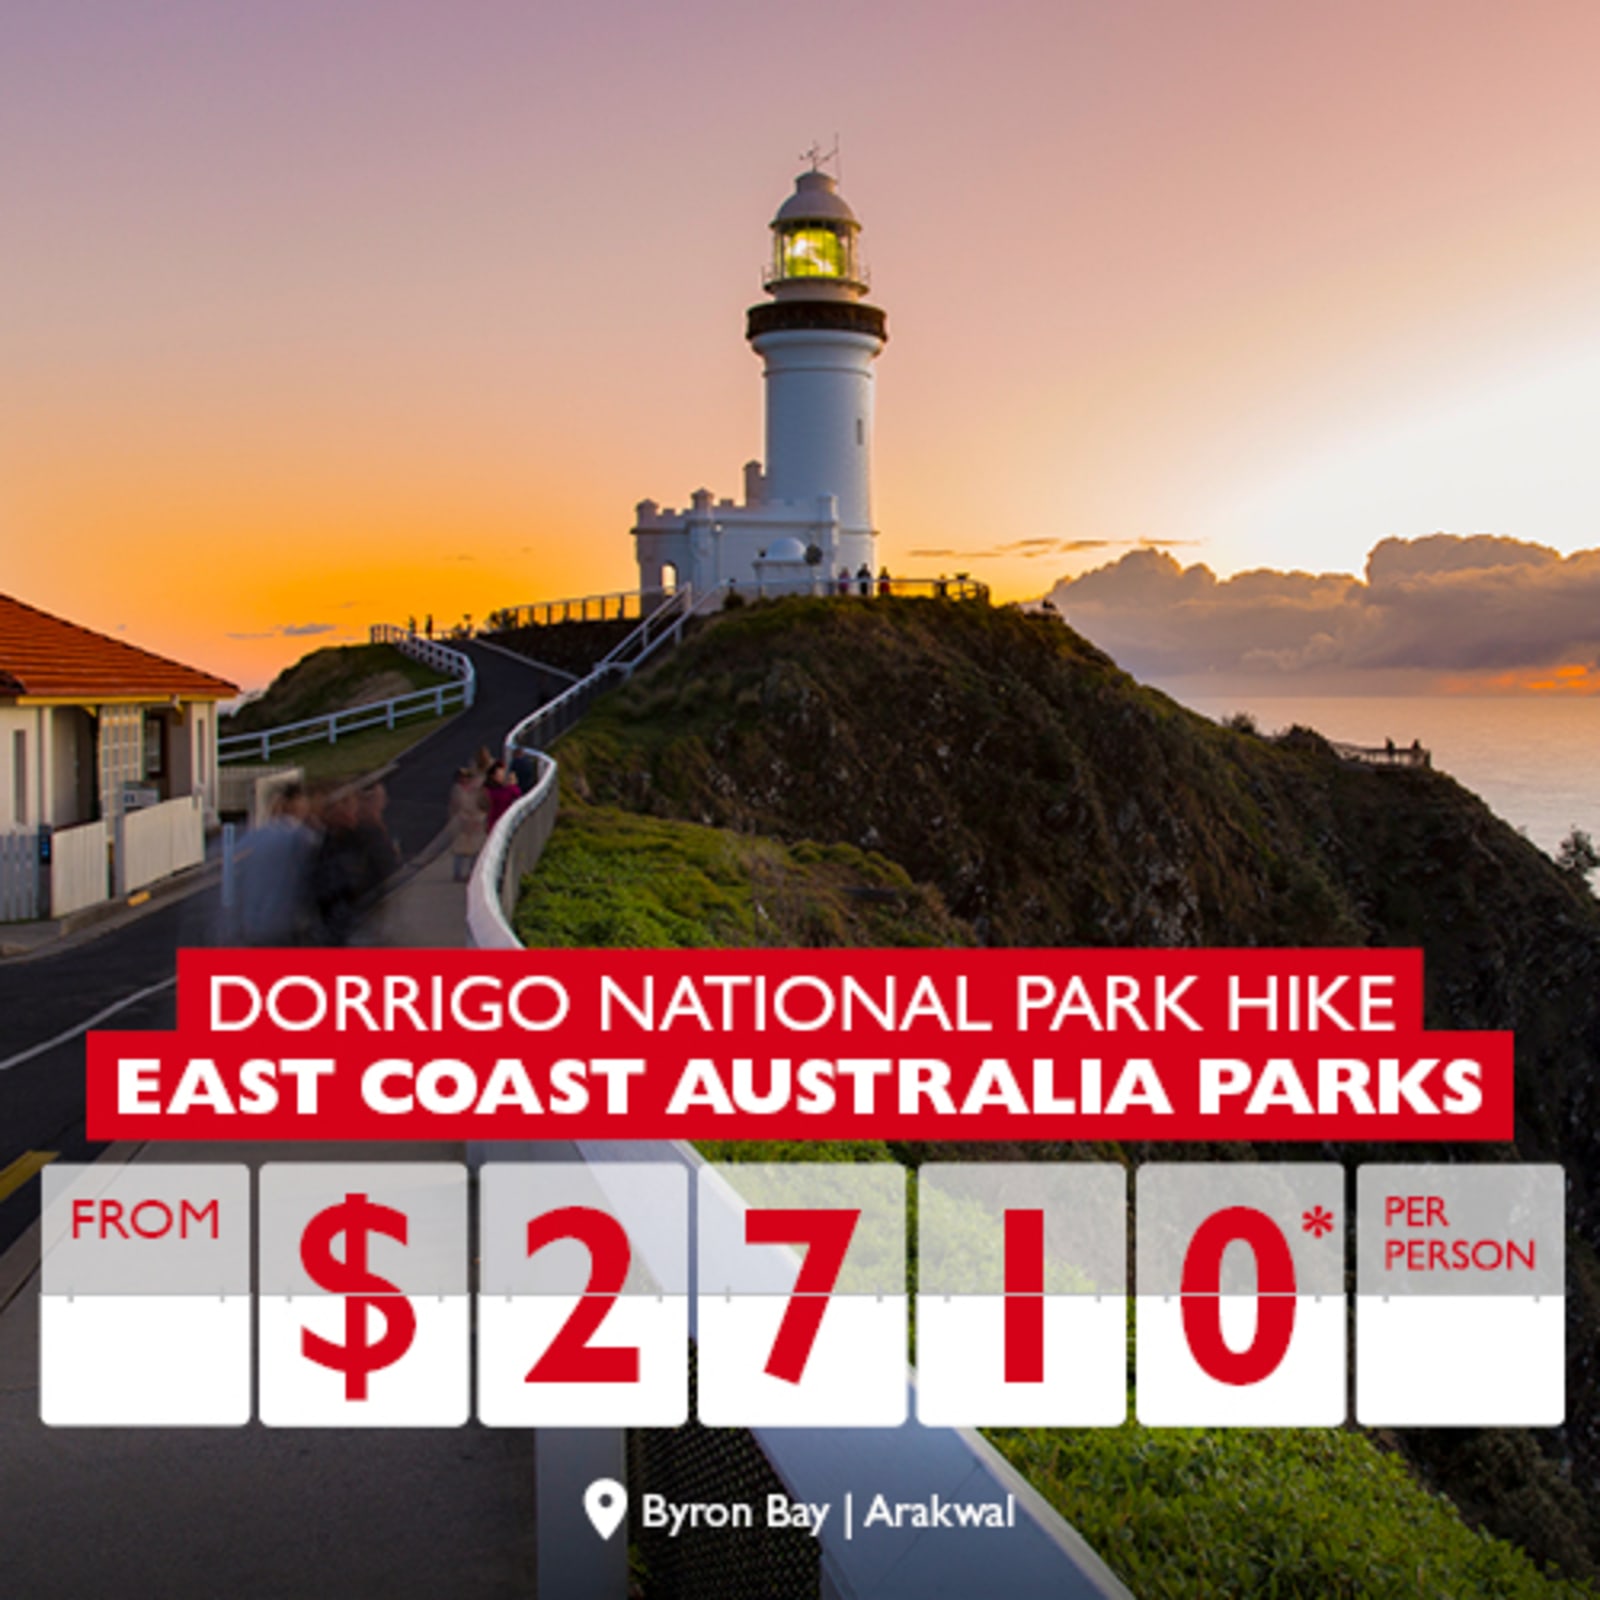 Dorrigo National Park Hike | East Coast Australia Parks from $2710* per person